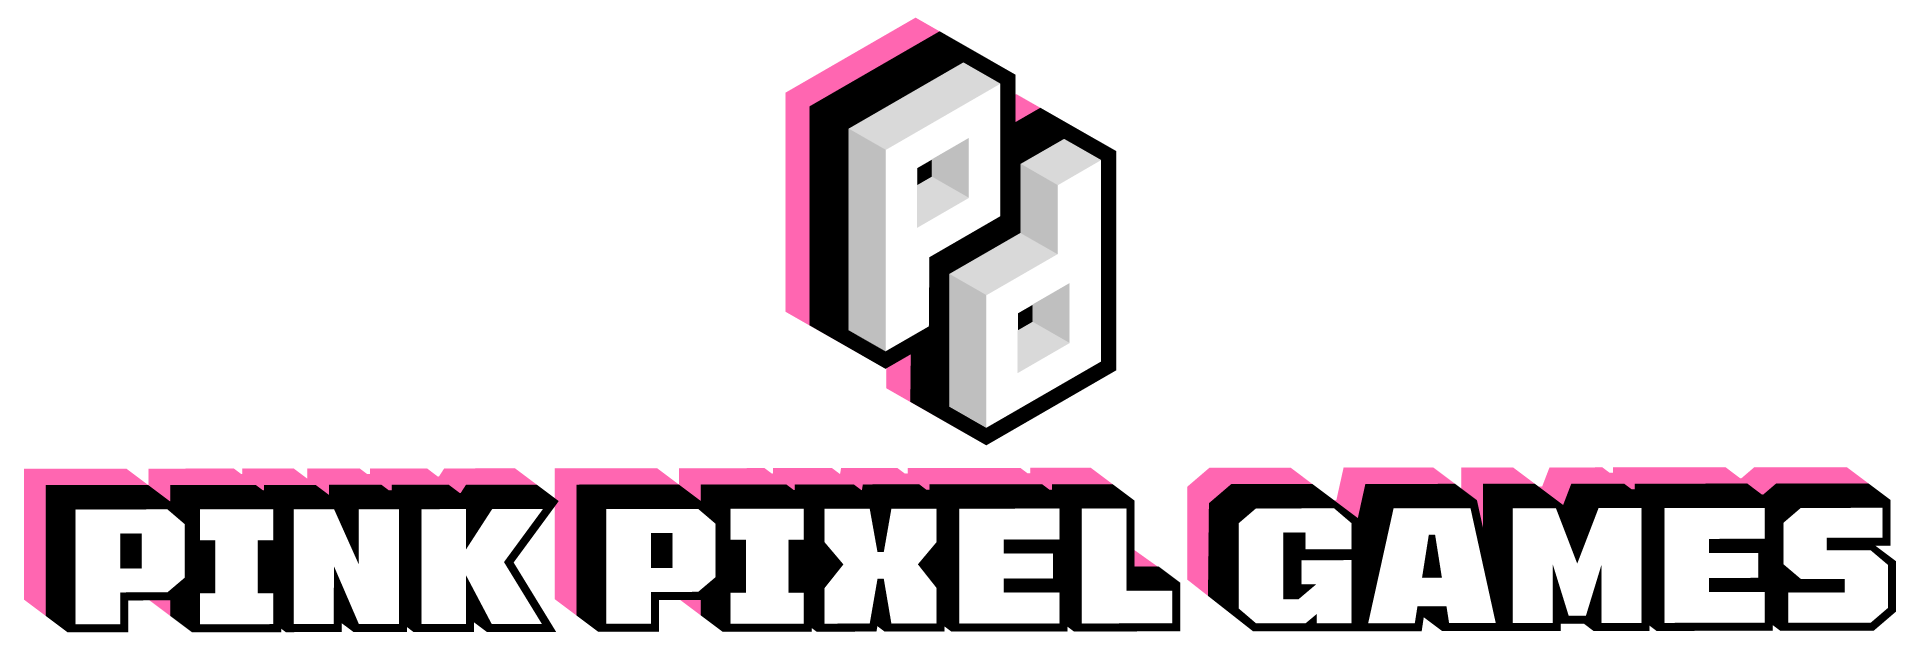 Pink Pixel Games_Pink Black Outline